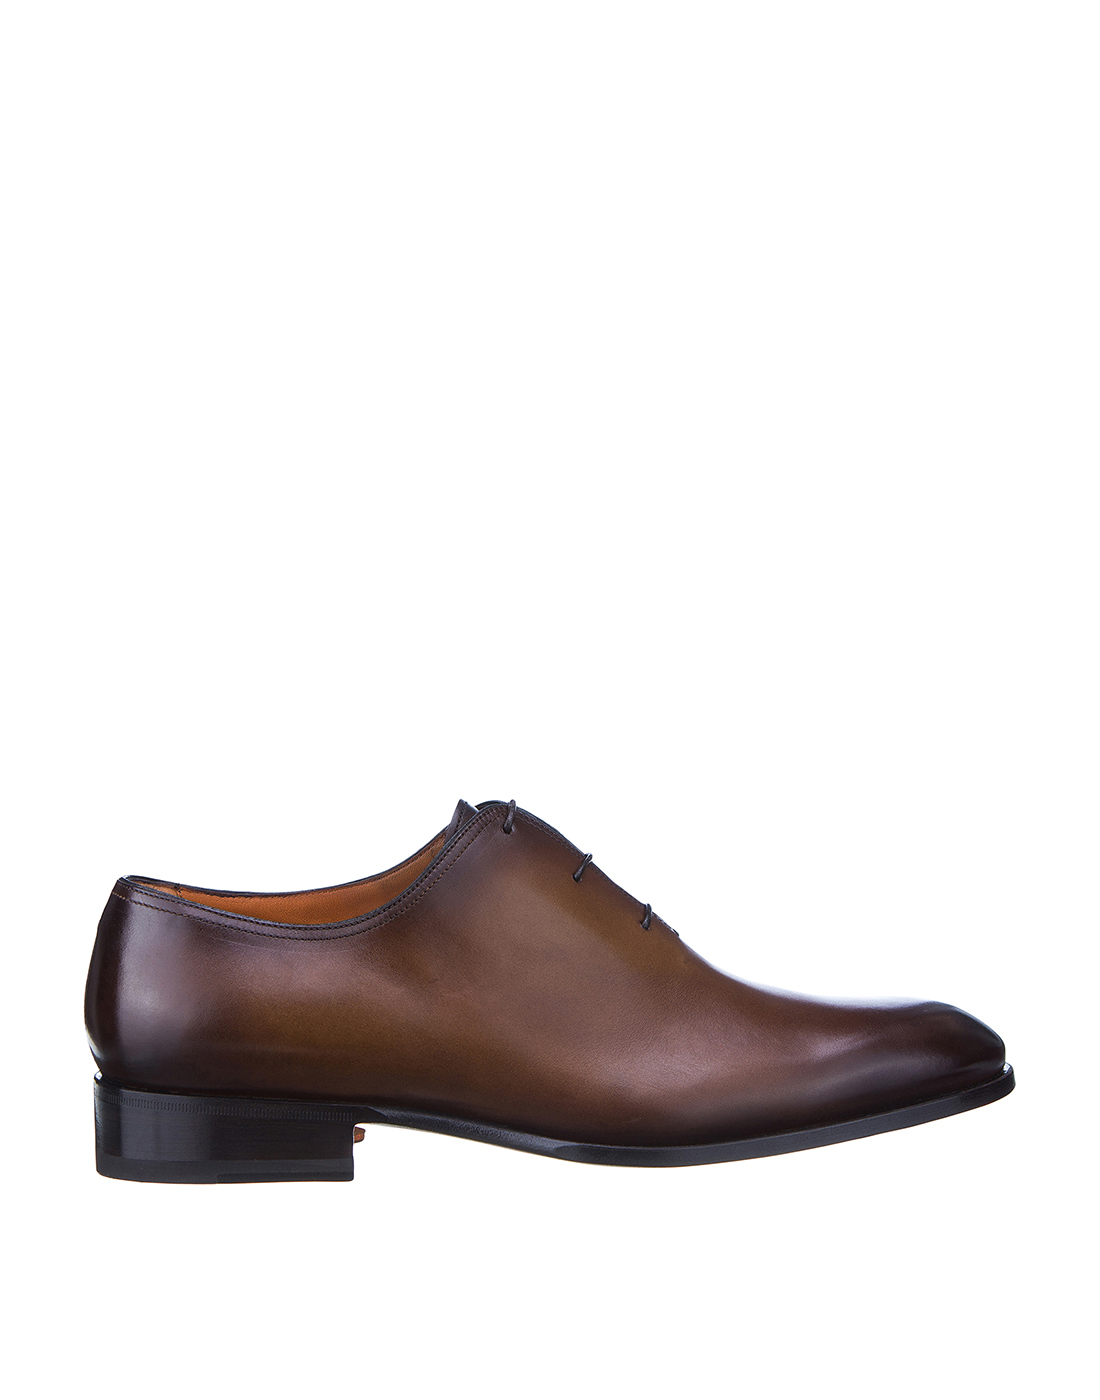 Туфли коричневые мужские Santoni SMCCG11732JC6IOBRM52-1